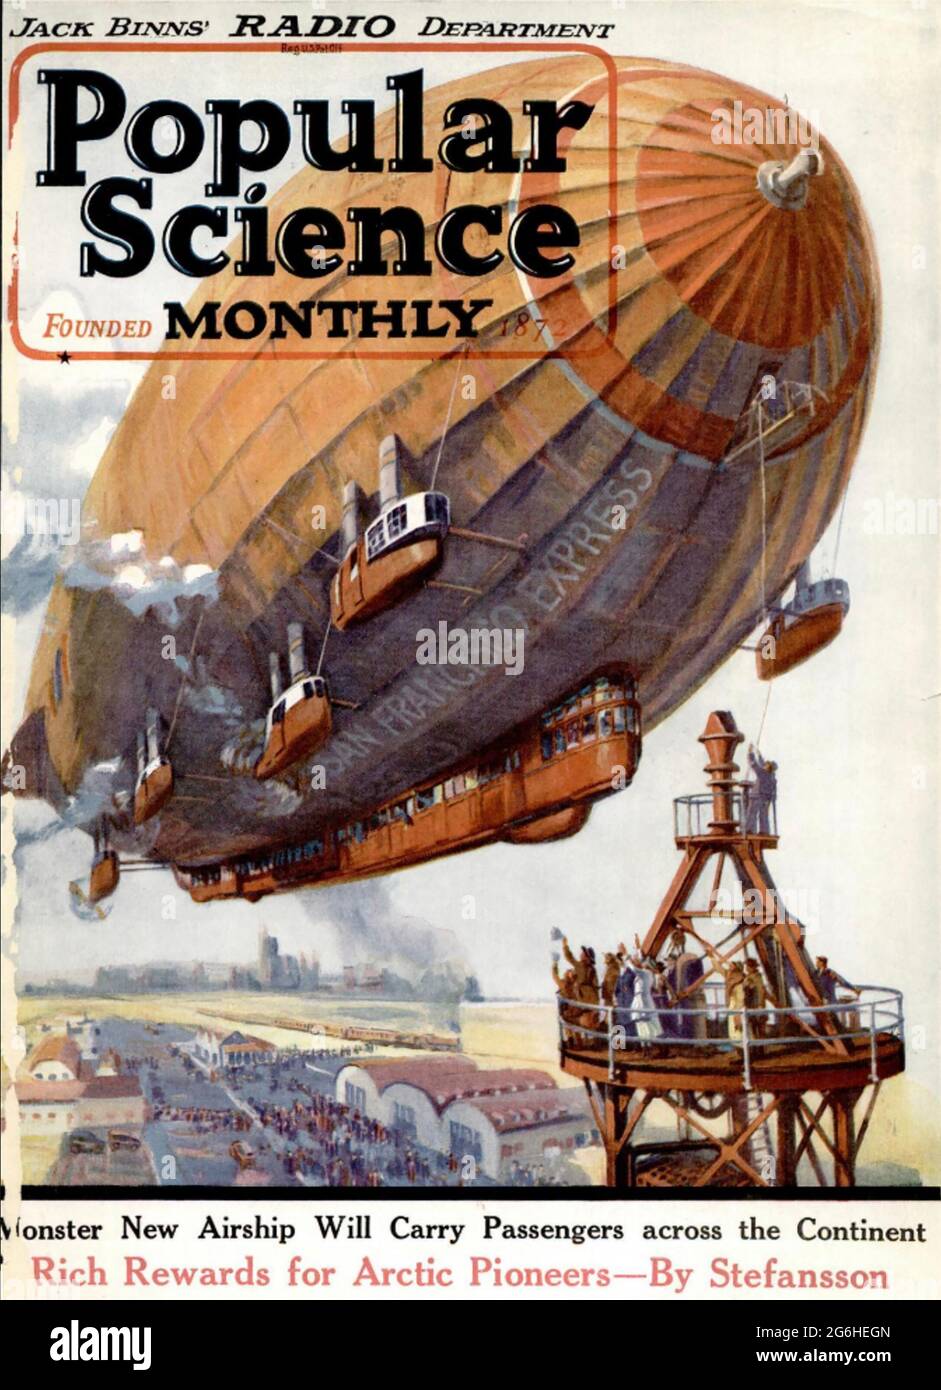 LA SCIENCE POPULAIRE un magazine trimestriel américain, publié pour la première fois en 1872. Le numéro de janvier 1932 montre un avion intercontinental. Banque D'Images